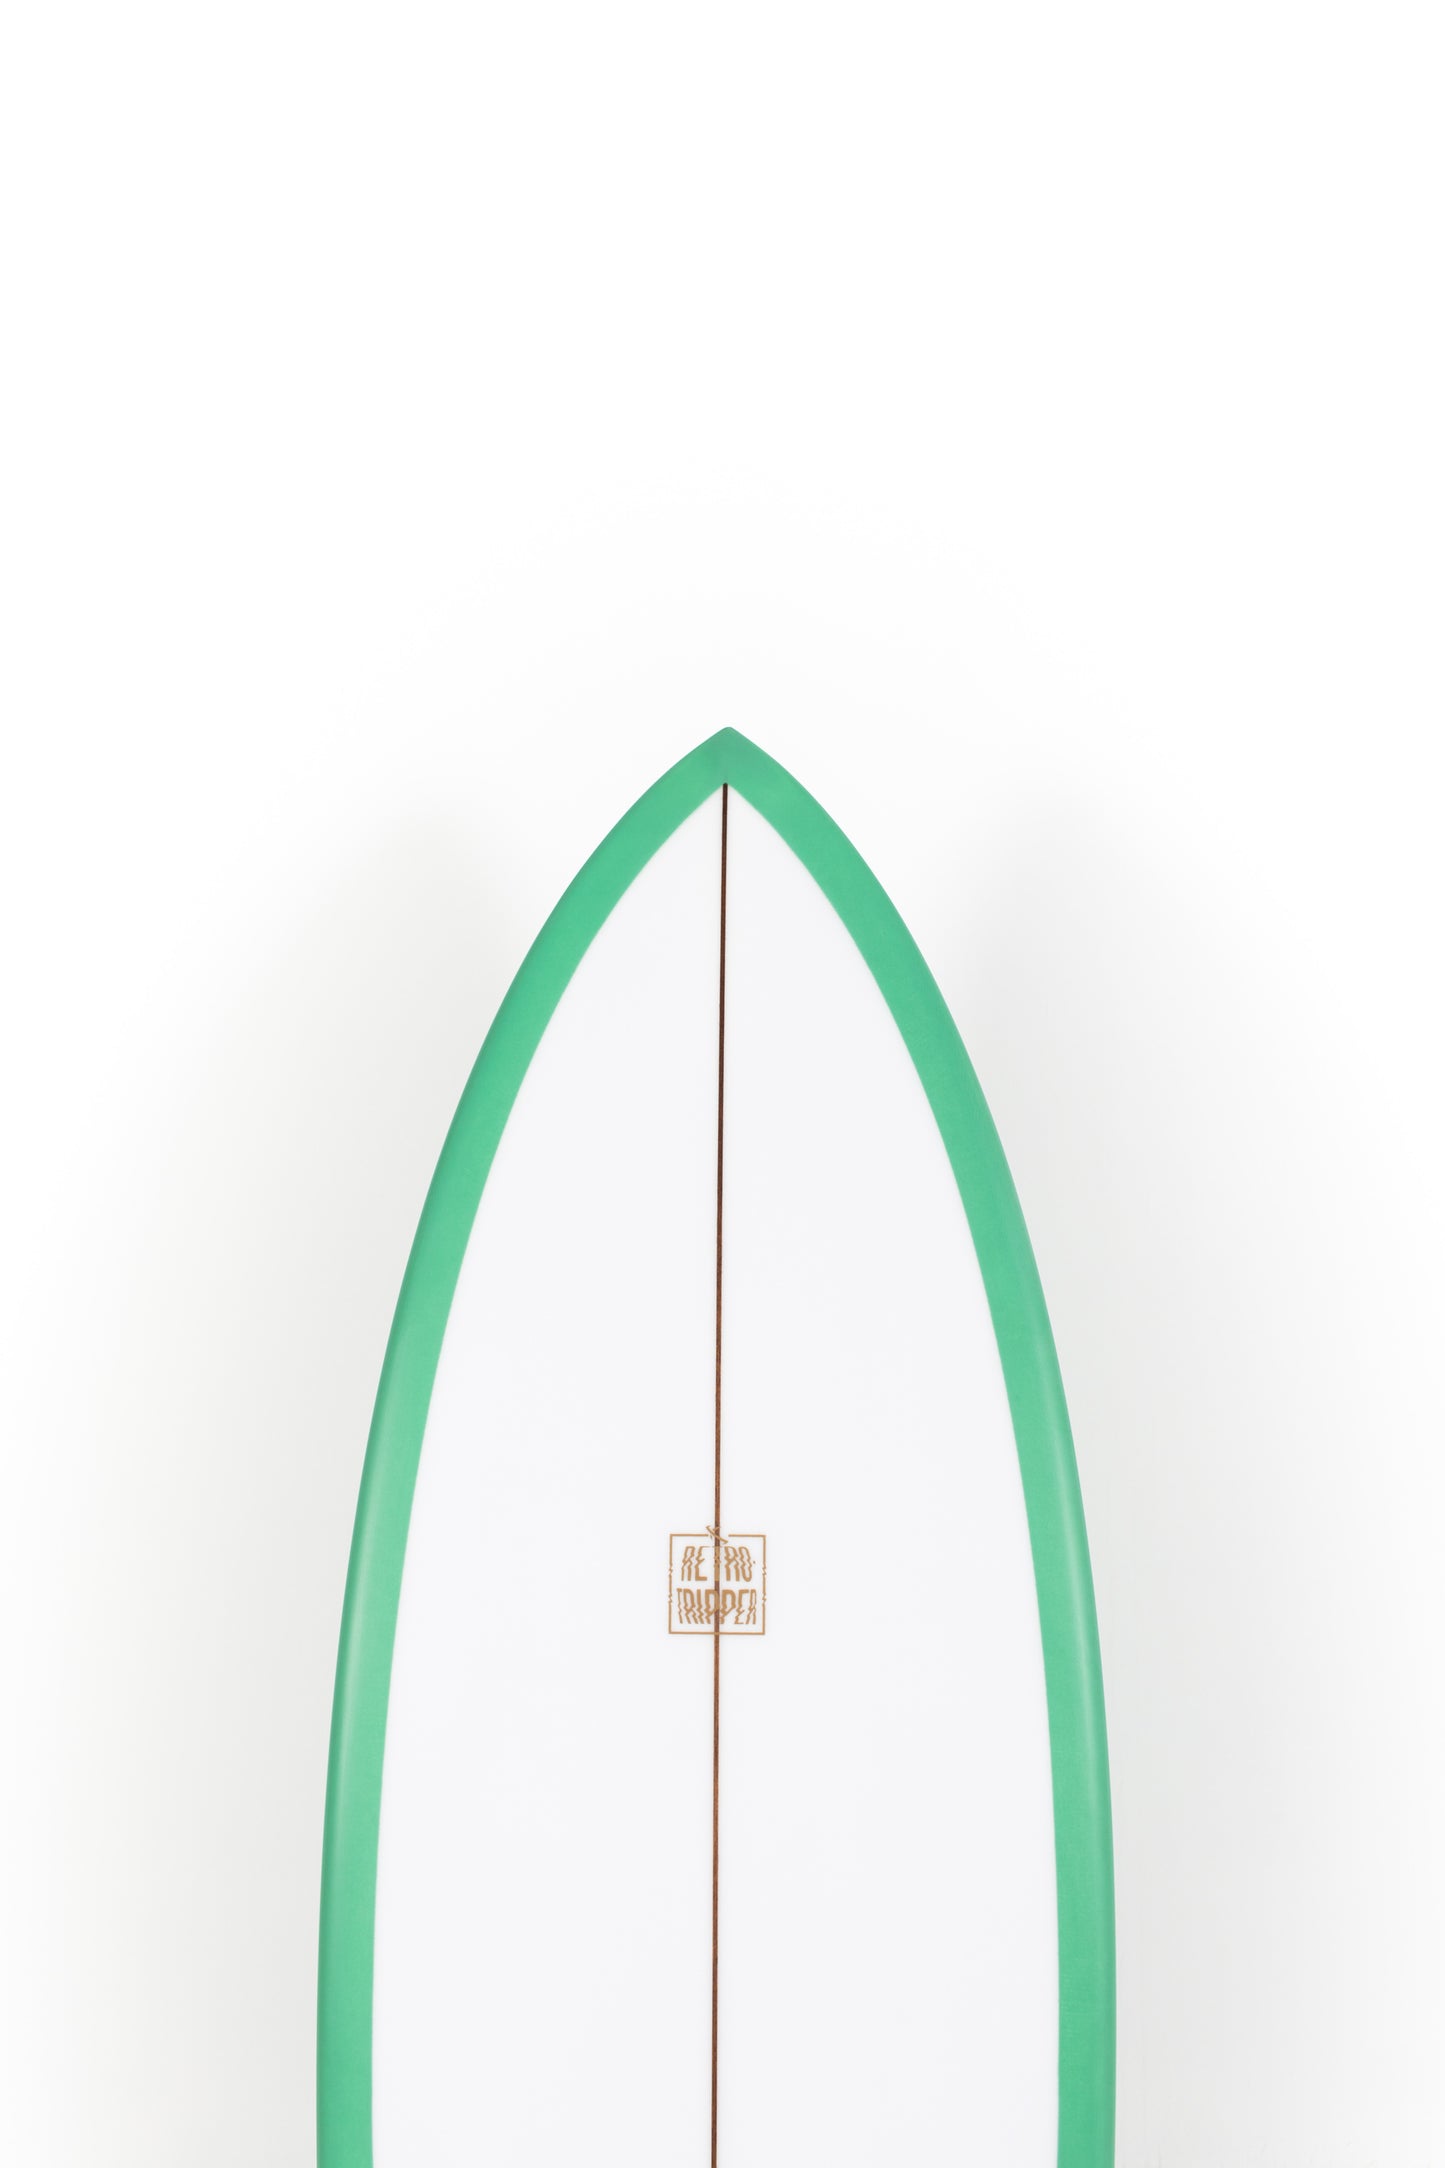 
                  
                    Pukas Surf Shop - Lost Surfboard - RETRO TRIPPER by Matt Biolos - 5'7" x 19.75 x 2.40 x 30L - MH14302
                  
                